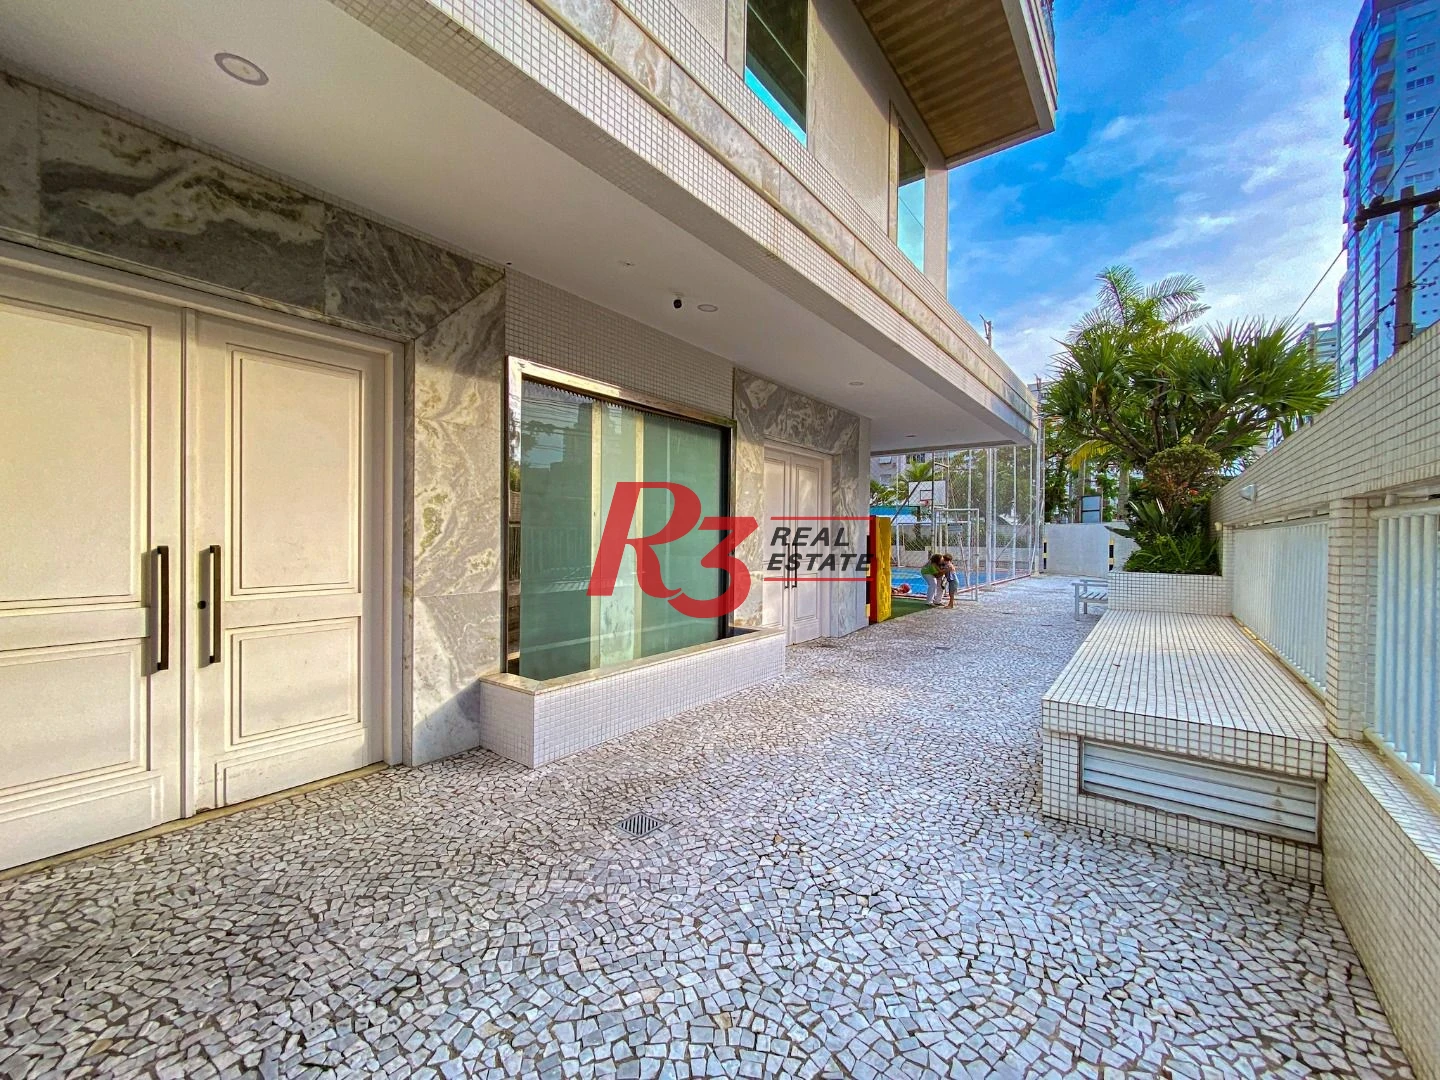 Apartamento Garden com 4 dormitórios à venda, 330 m² por R$ 3.890.000,00 - Aparecida - Santos/SP